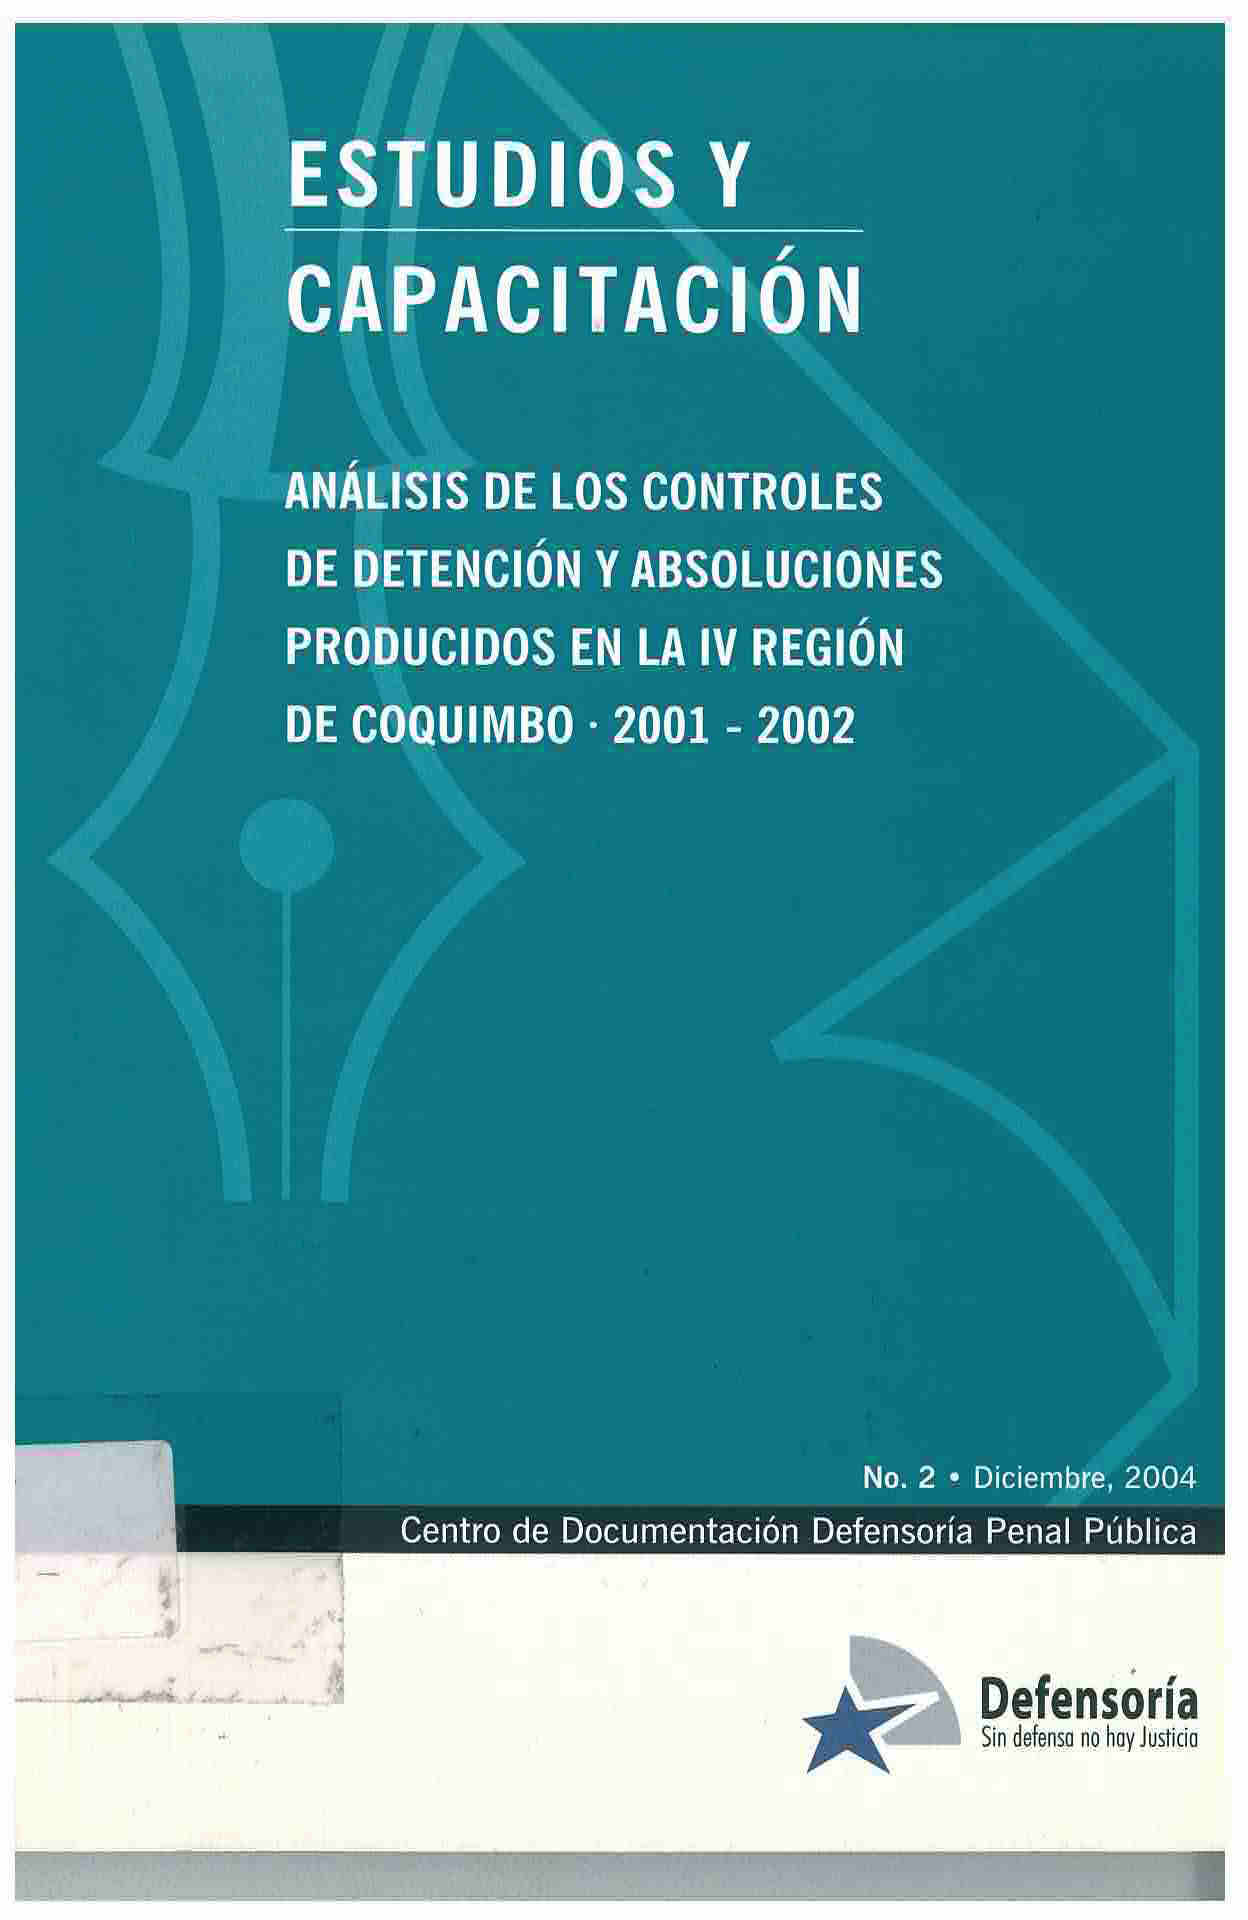 Análisis de los controles de detención y absoluciones producidos en la IV región de coquimbo 2001-2002